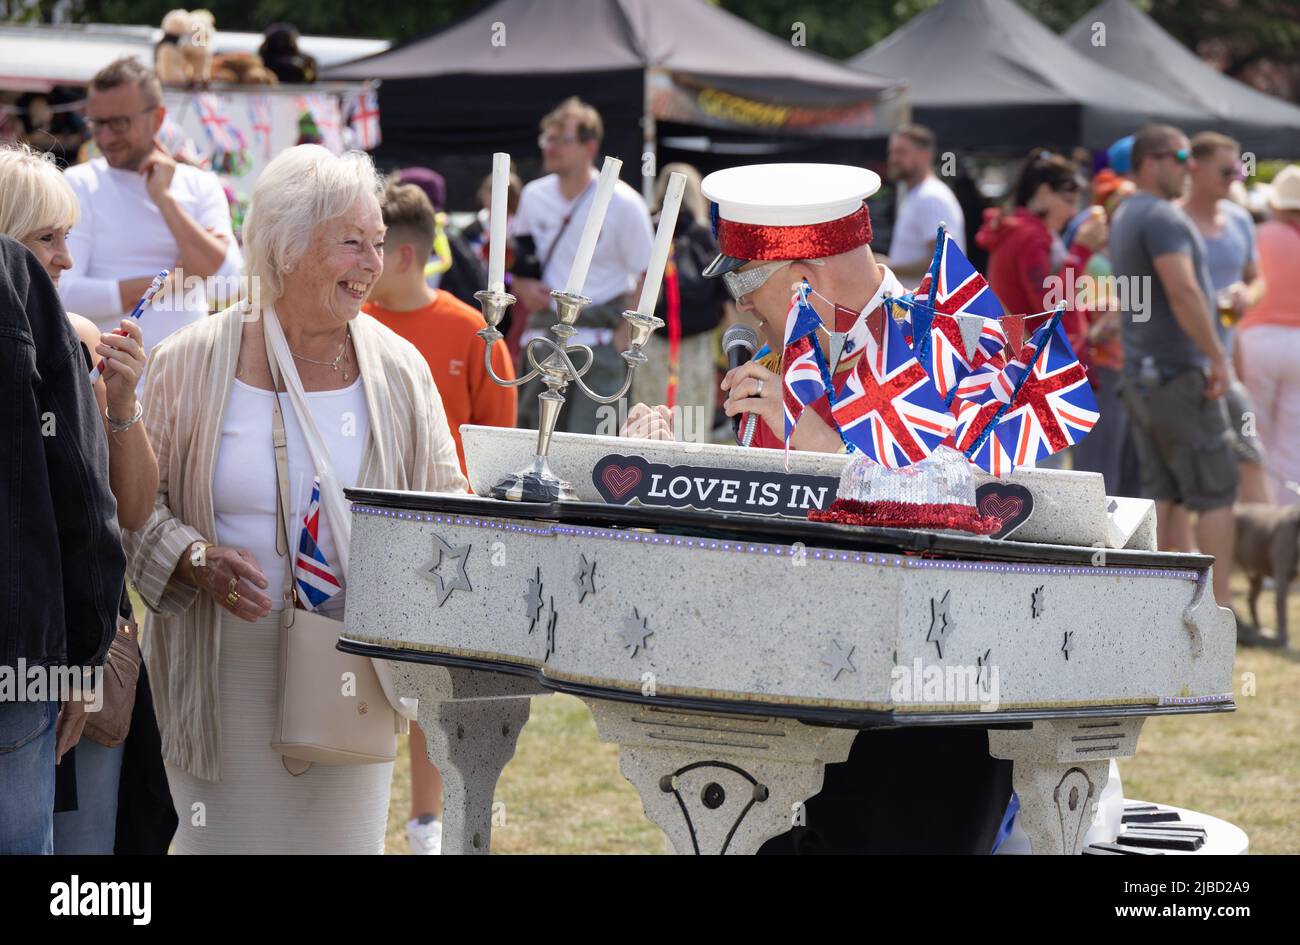 Exzentrischer englischer Lebensstil; Ein Mann, der als Elton John gekleidet ist, sieht sich ähnlich und spricht mit einer Frau auf den Platinum Jubilee Feiern, Newmarket Suffolk UK Stockfoto